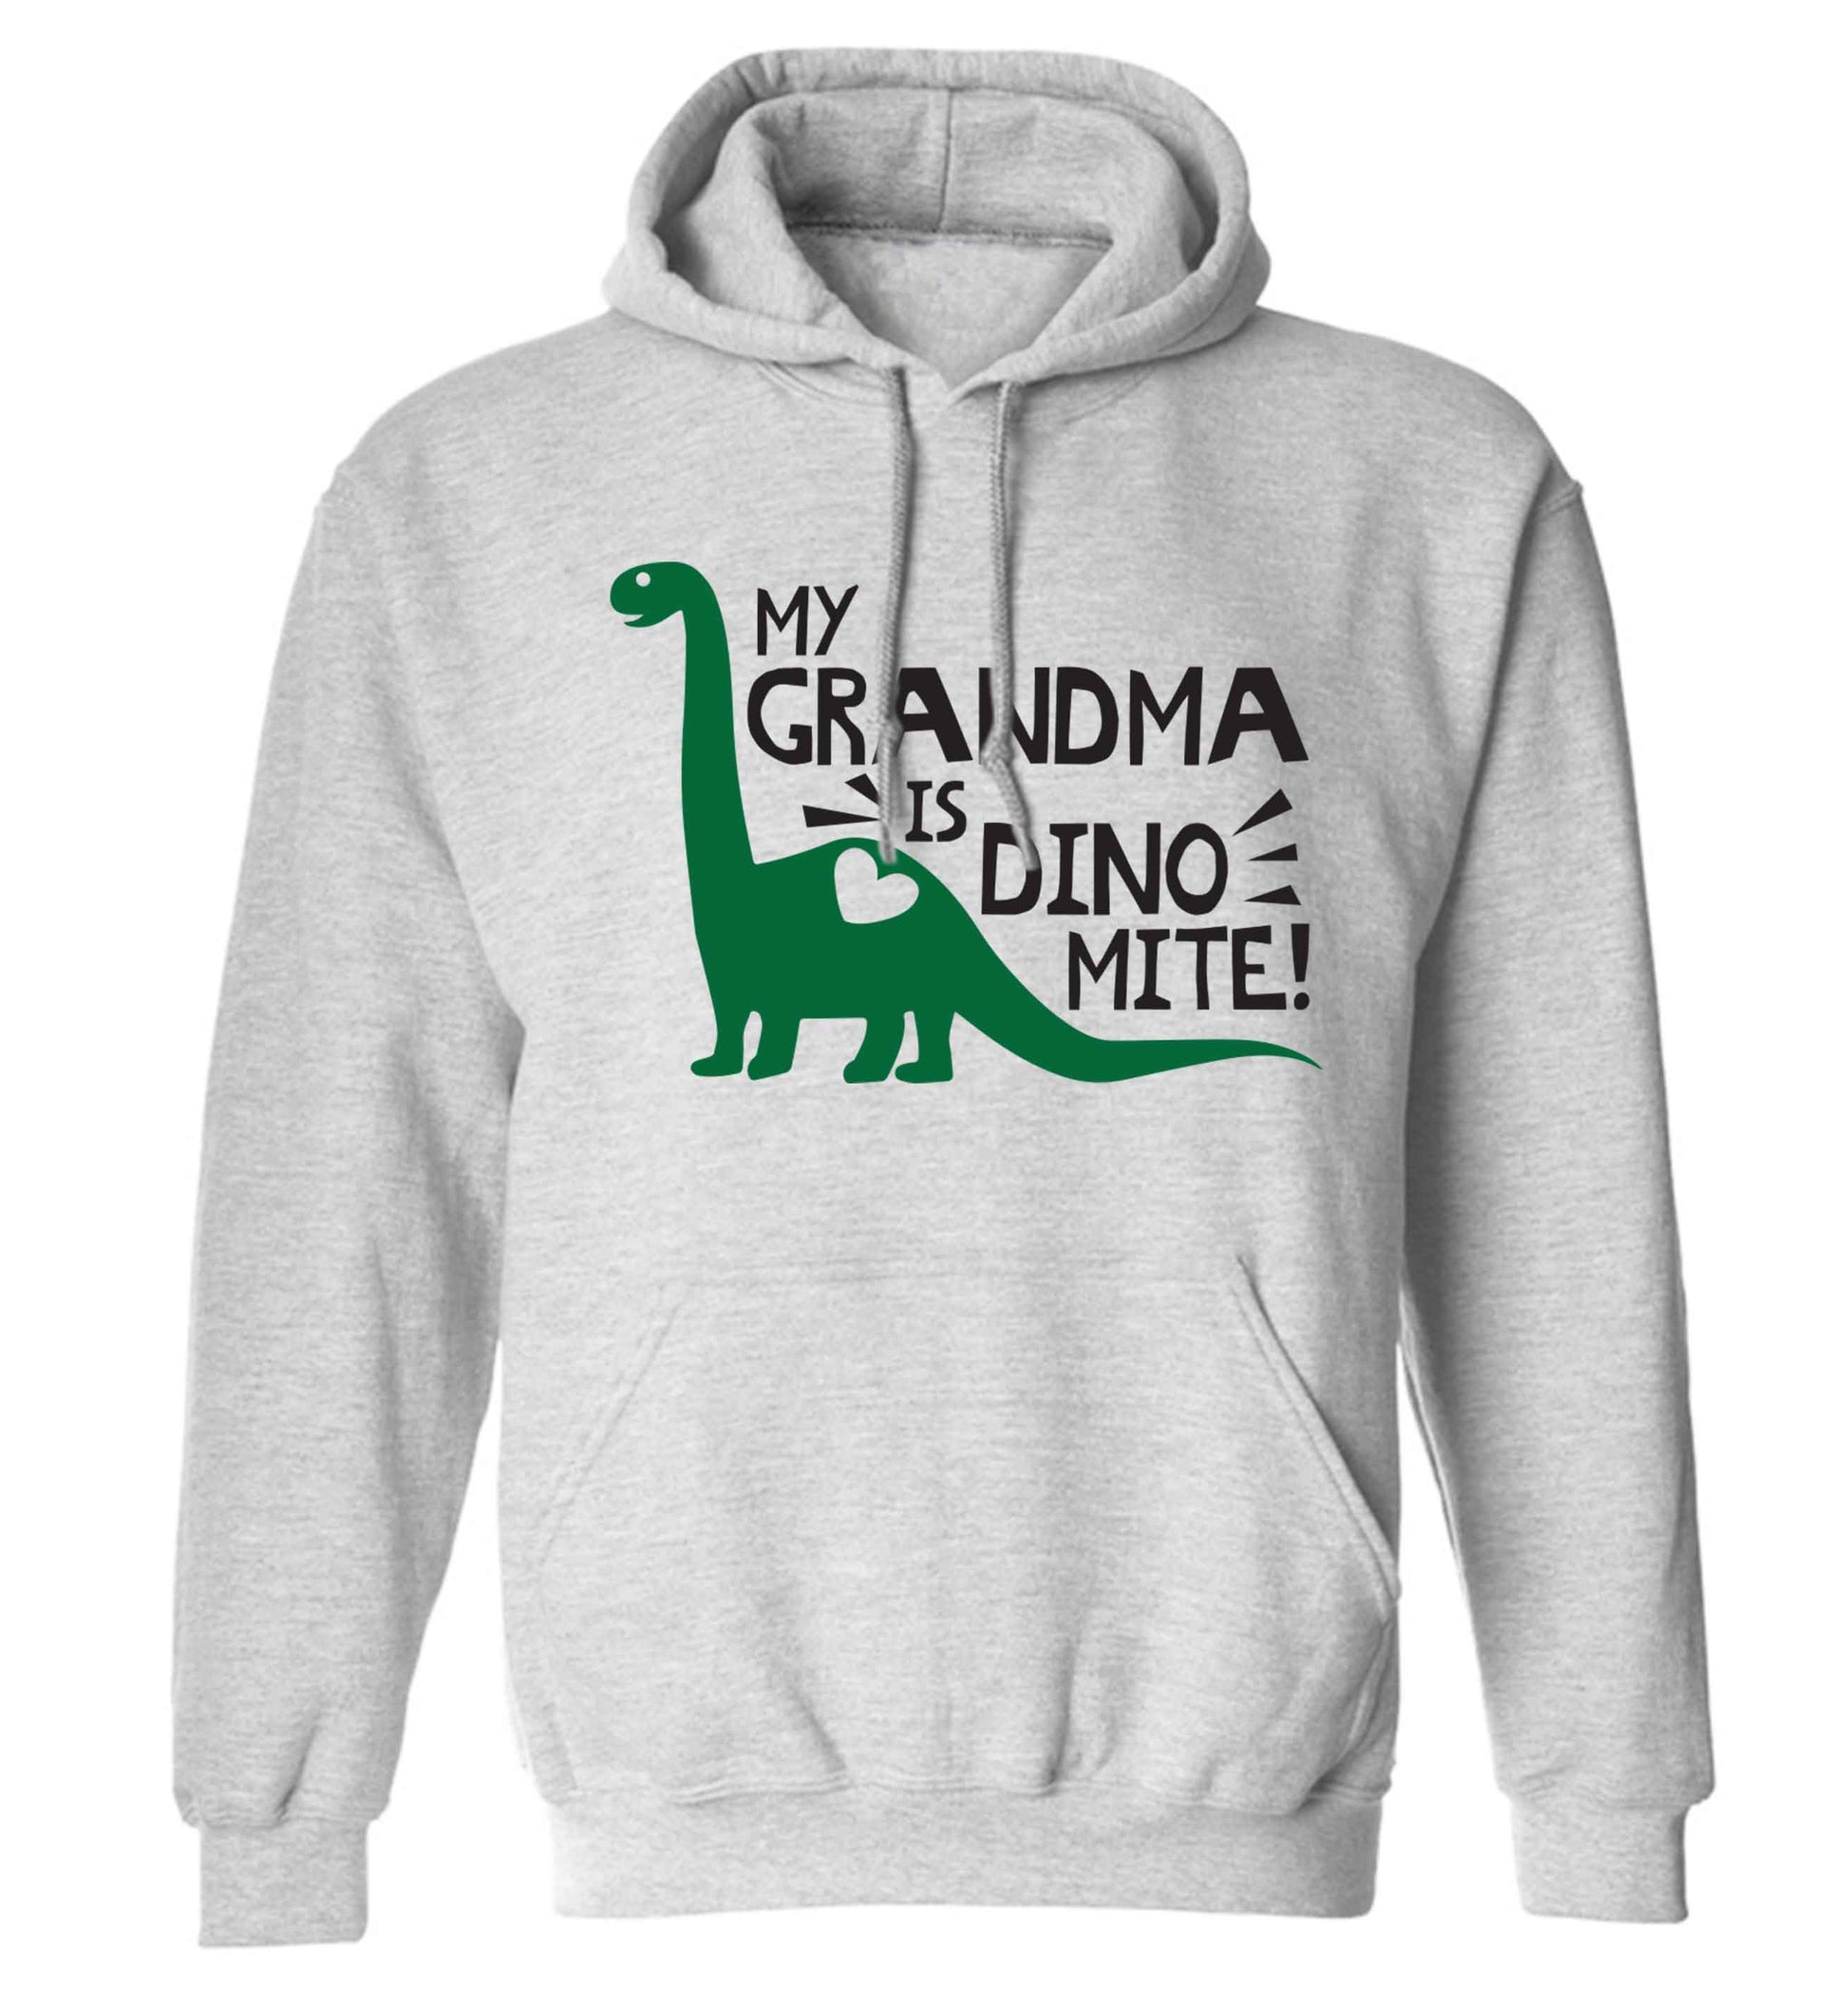 My grandma is dinomite! adults unisex grey hoodie 2XL